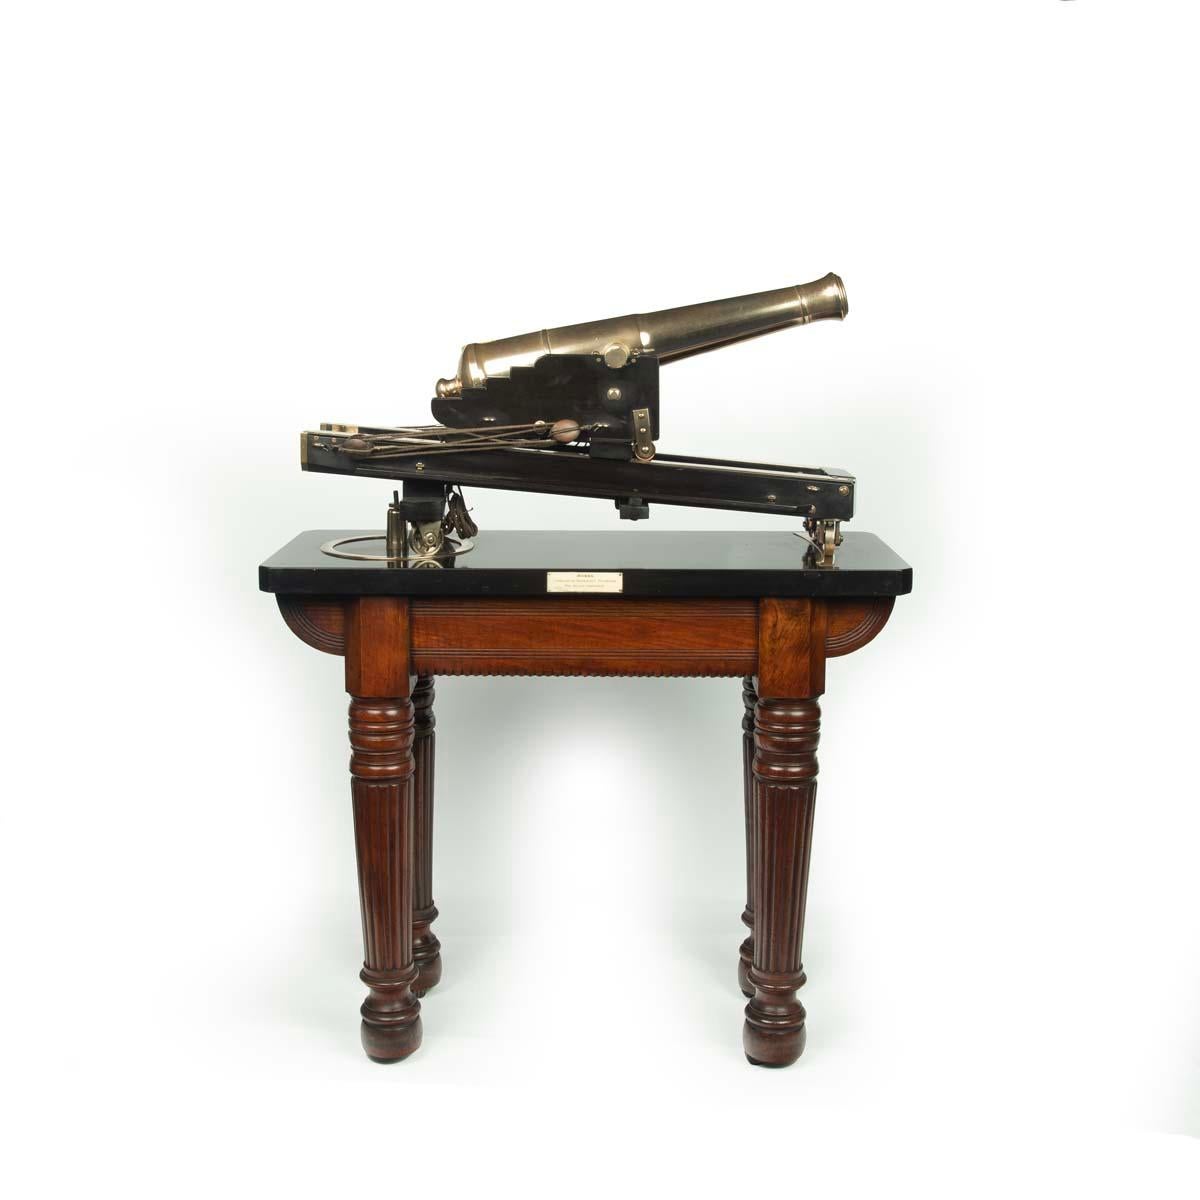 Un modèle de démonstration ou de musée d'un canon traversant de la défense civile. Ce modèle réduit en bronze d'un canon de défense repose sur un solide affût en ébène, avec des blocs et des agrès fonctionnels pour faire sortir le canon.  Il est